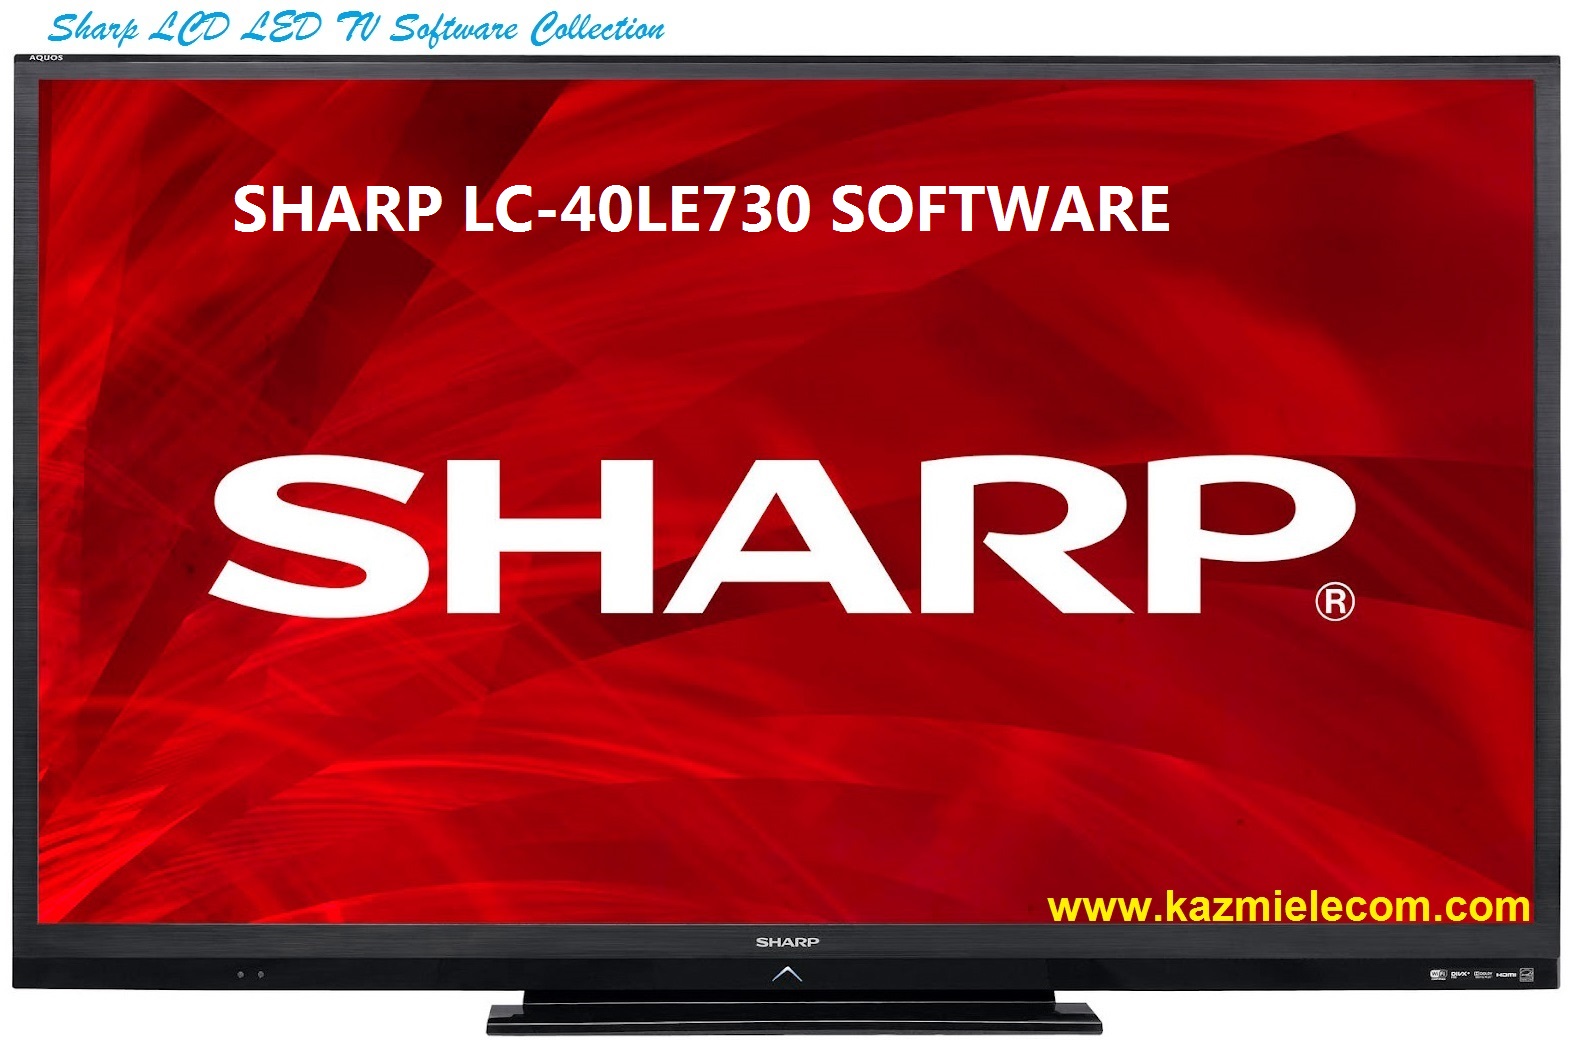 Sharp Lc-40Le730